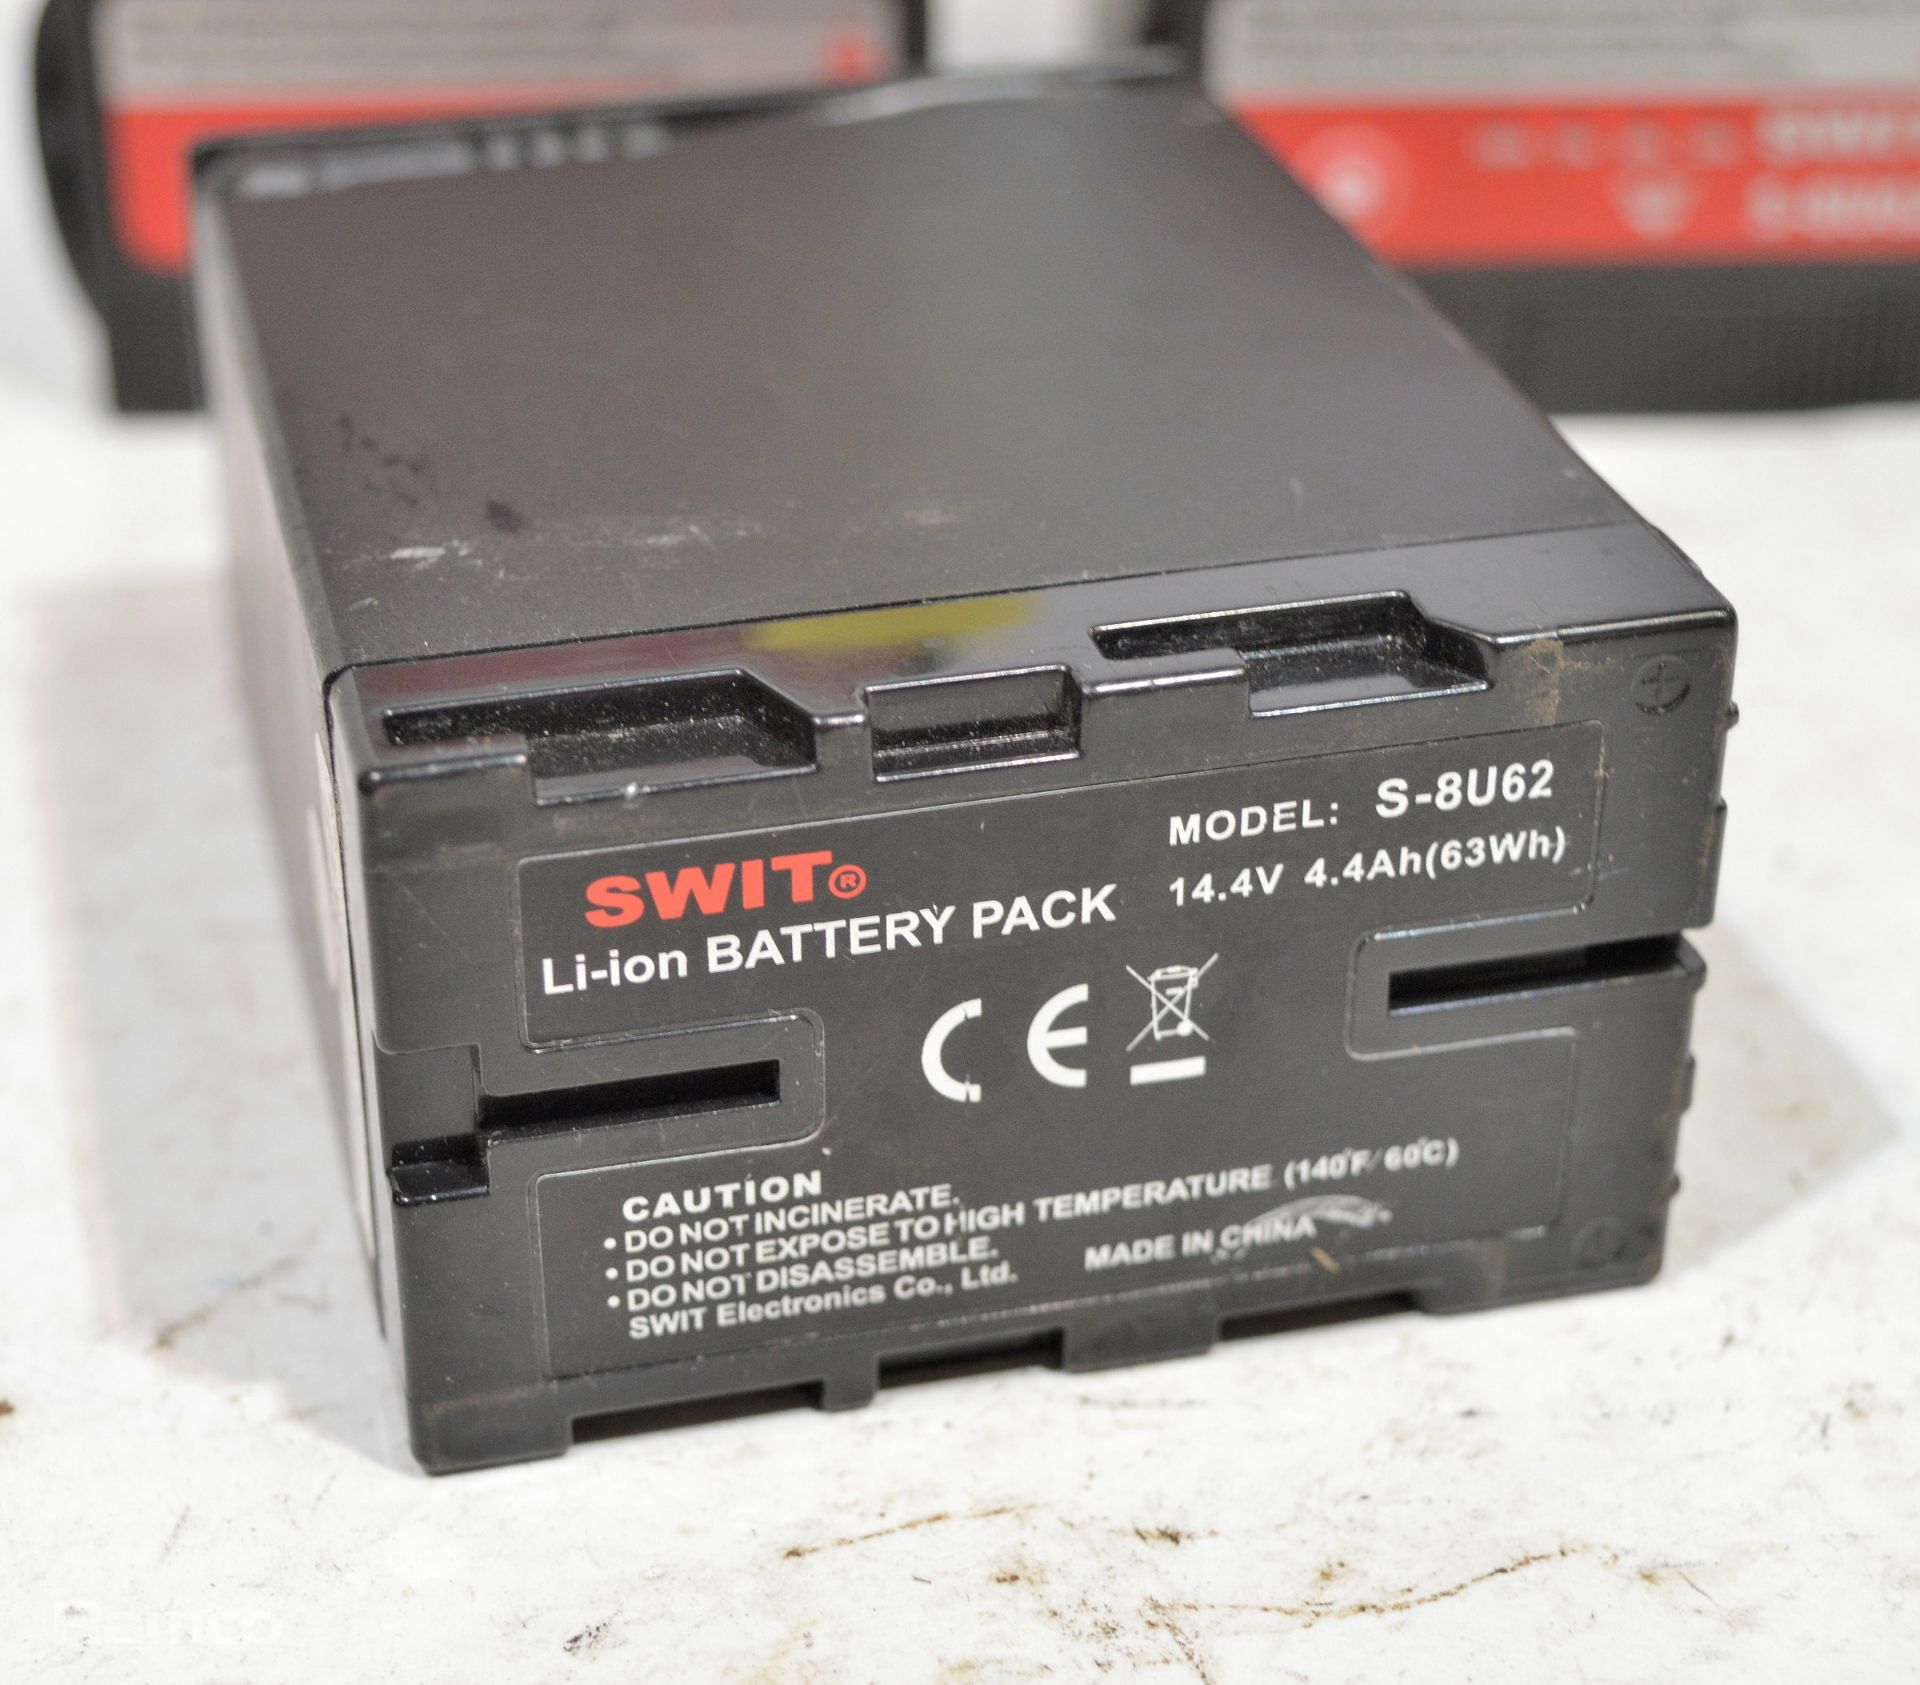 6x SWIT S-8U62 Battery packs - 14.4V 4.4Ah - Image 3 of 3